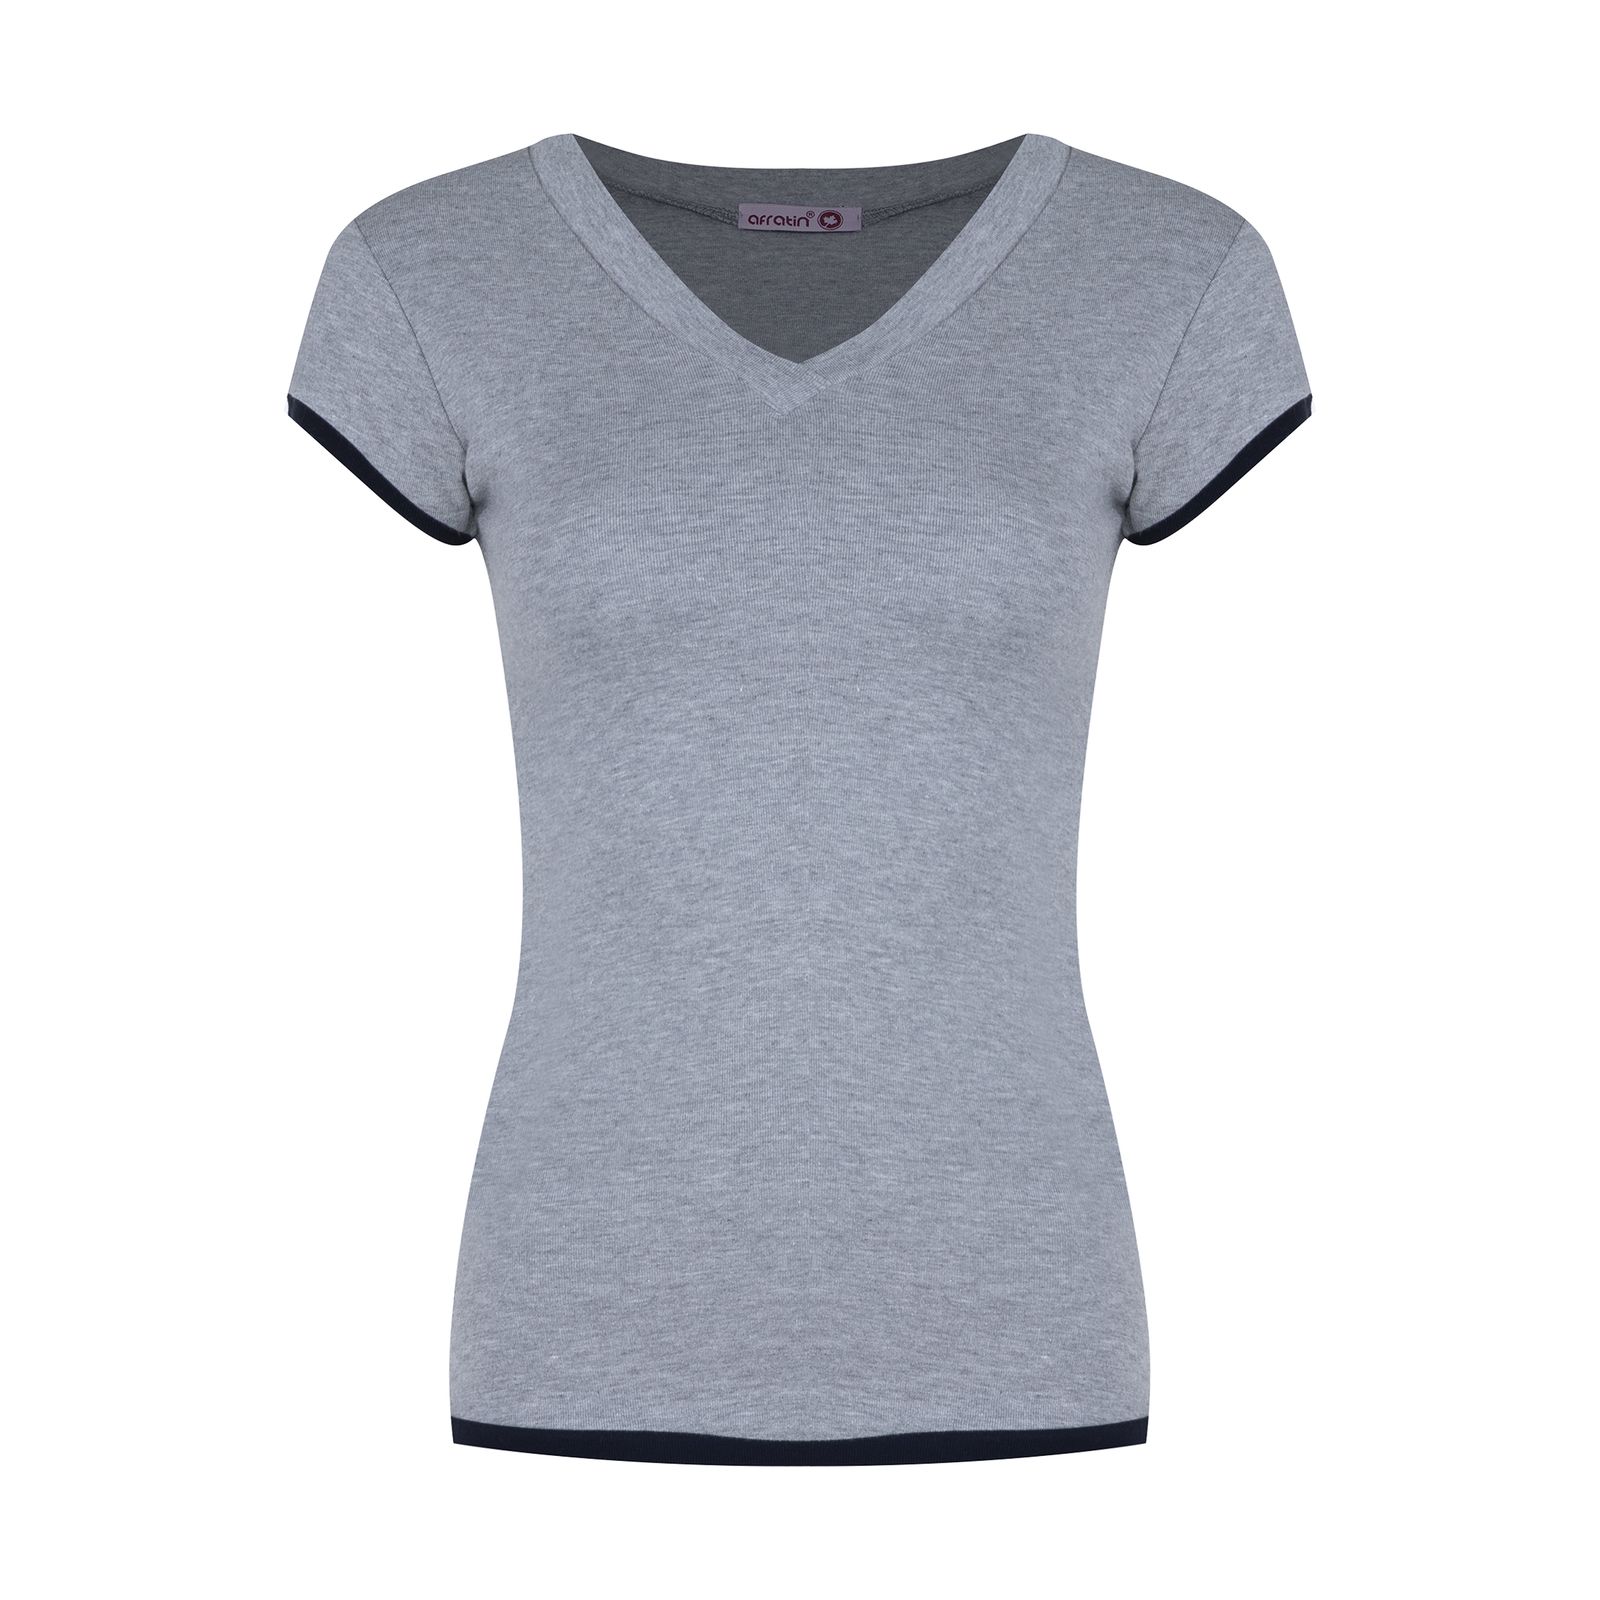 تی شرت زنانه افراتین کد 2556 رنگ طوسی -  - 1